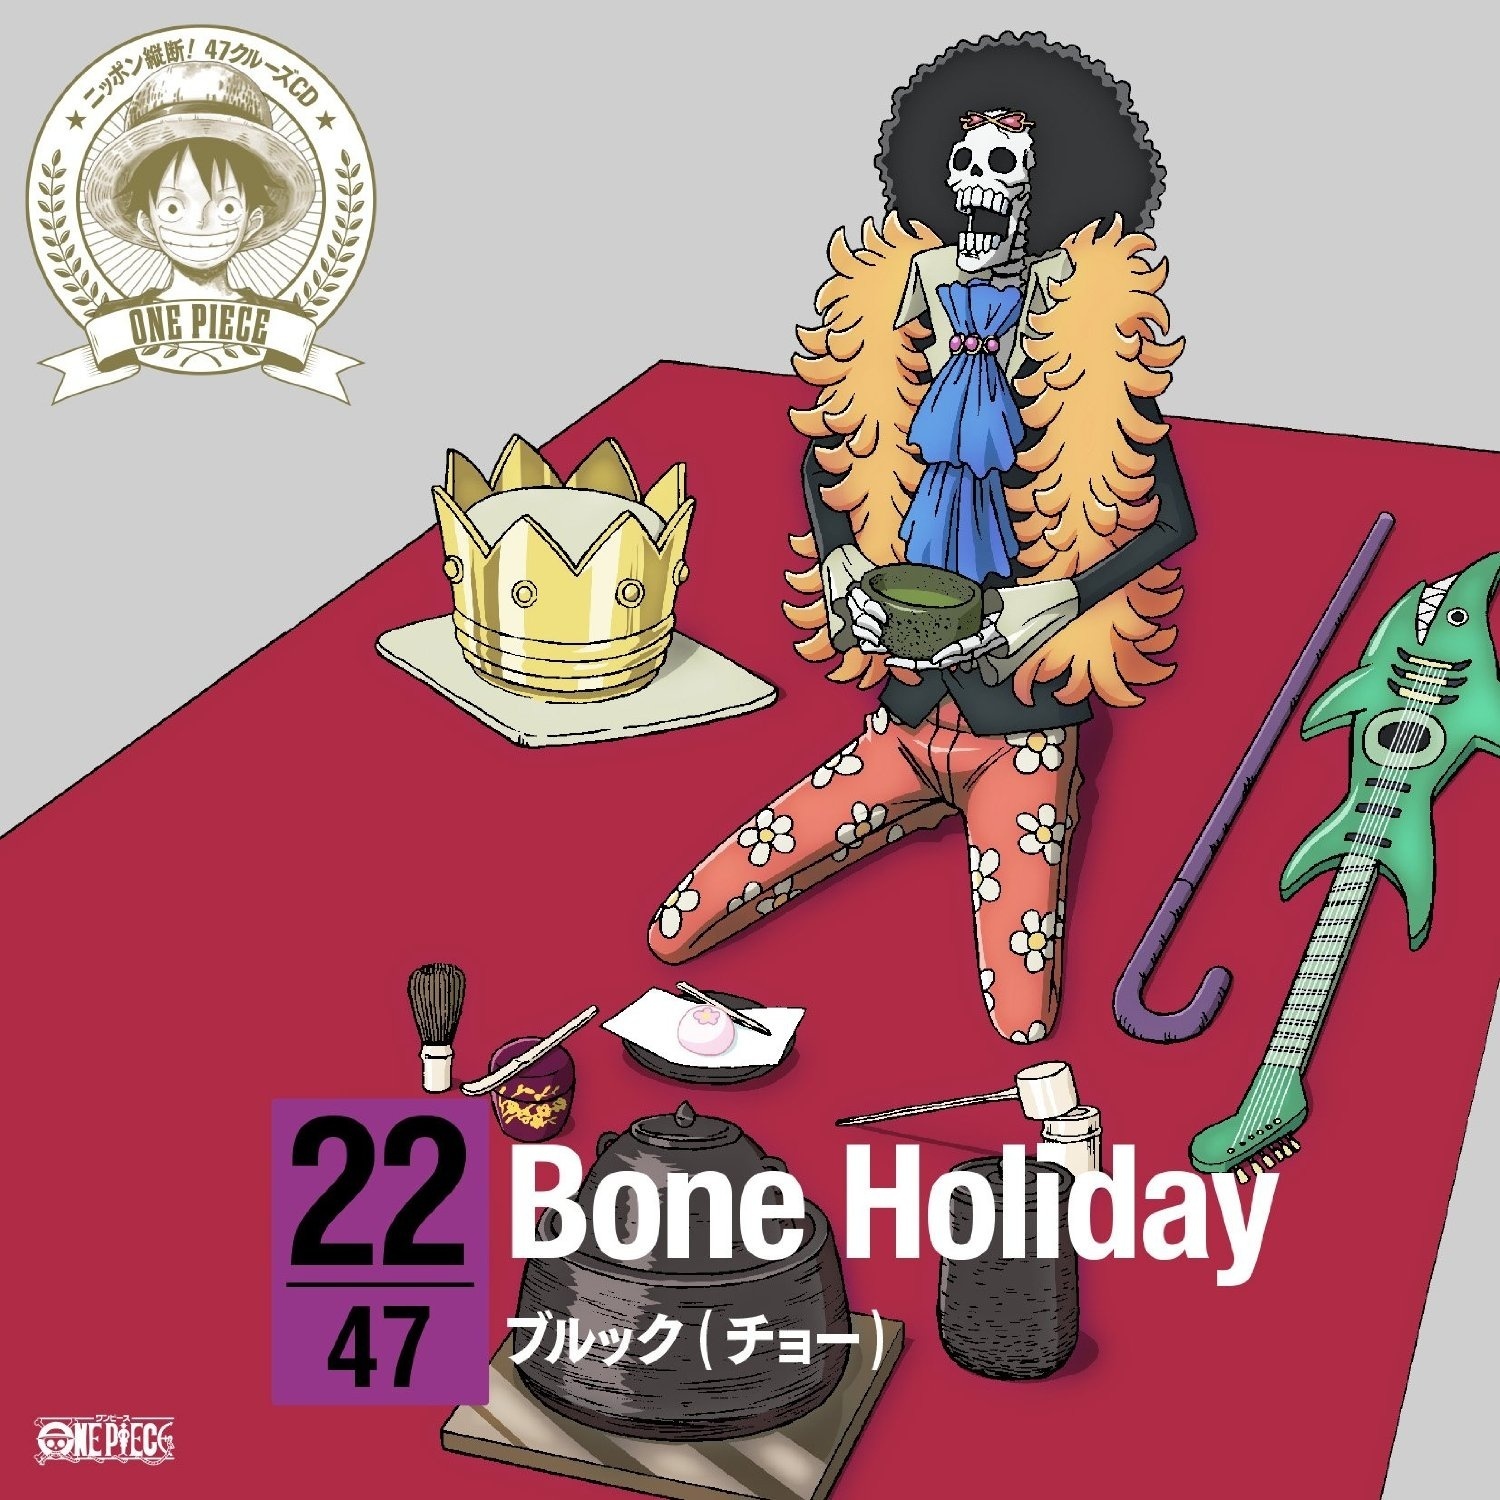 zong duan! 47 CD in jing gang Bone Holiday